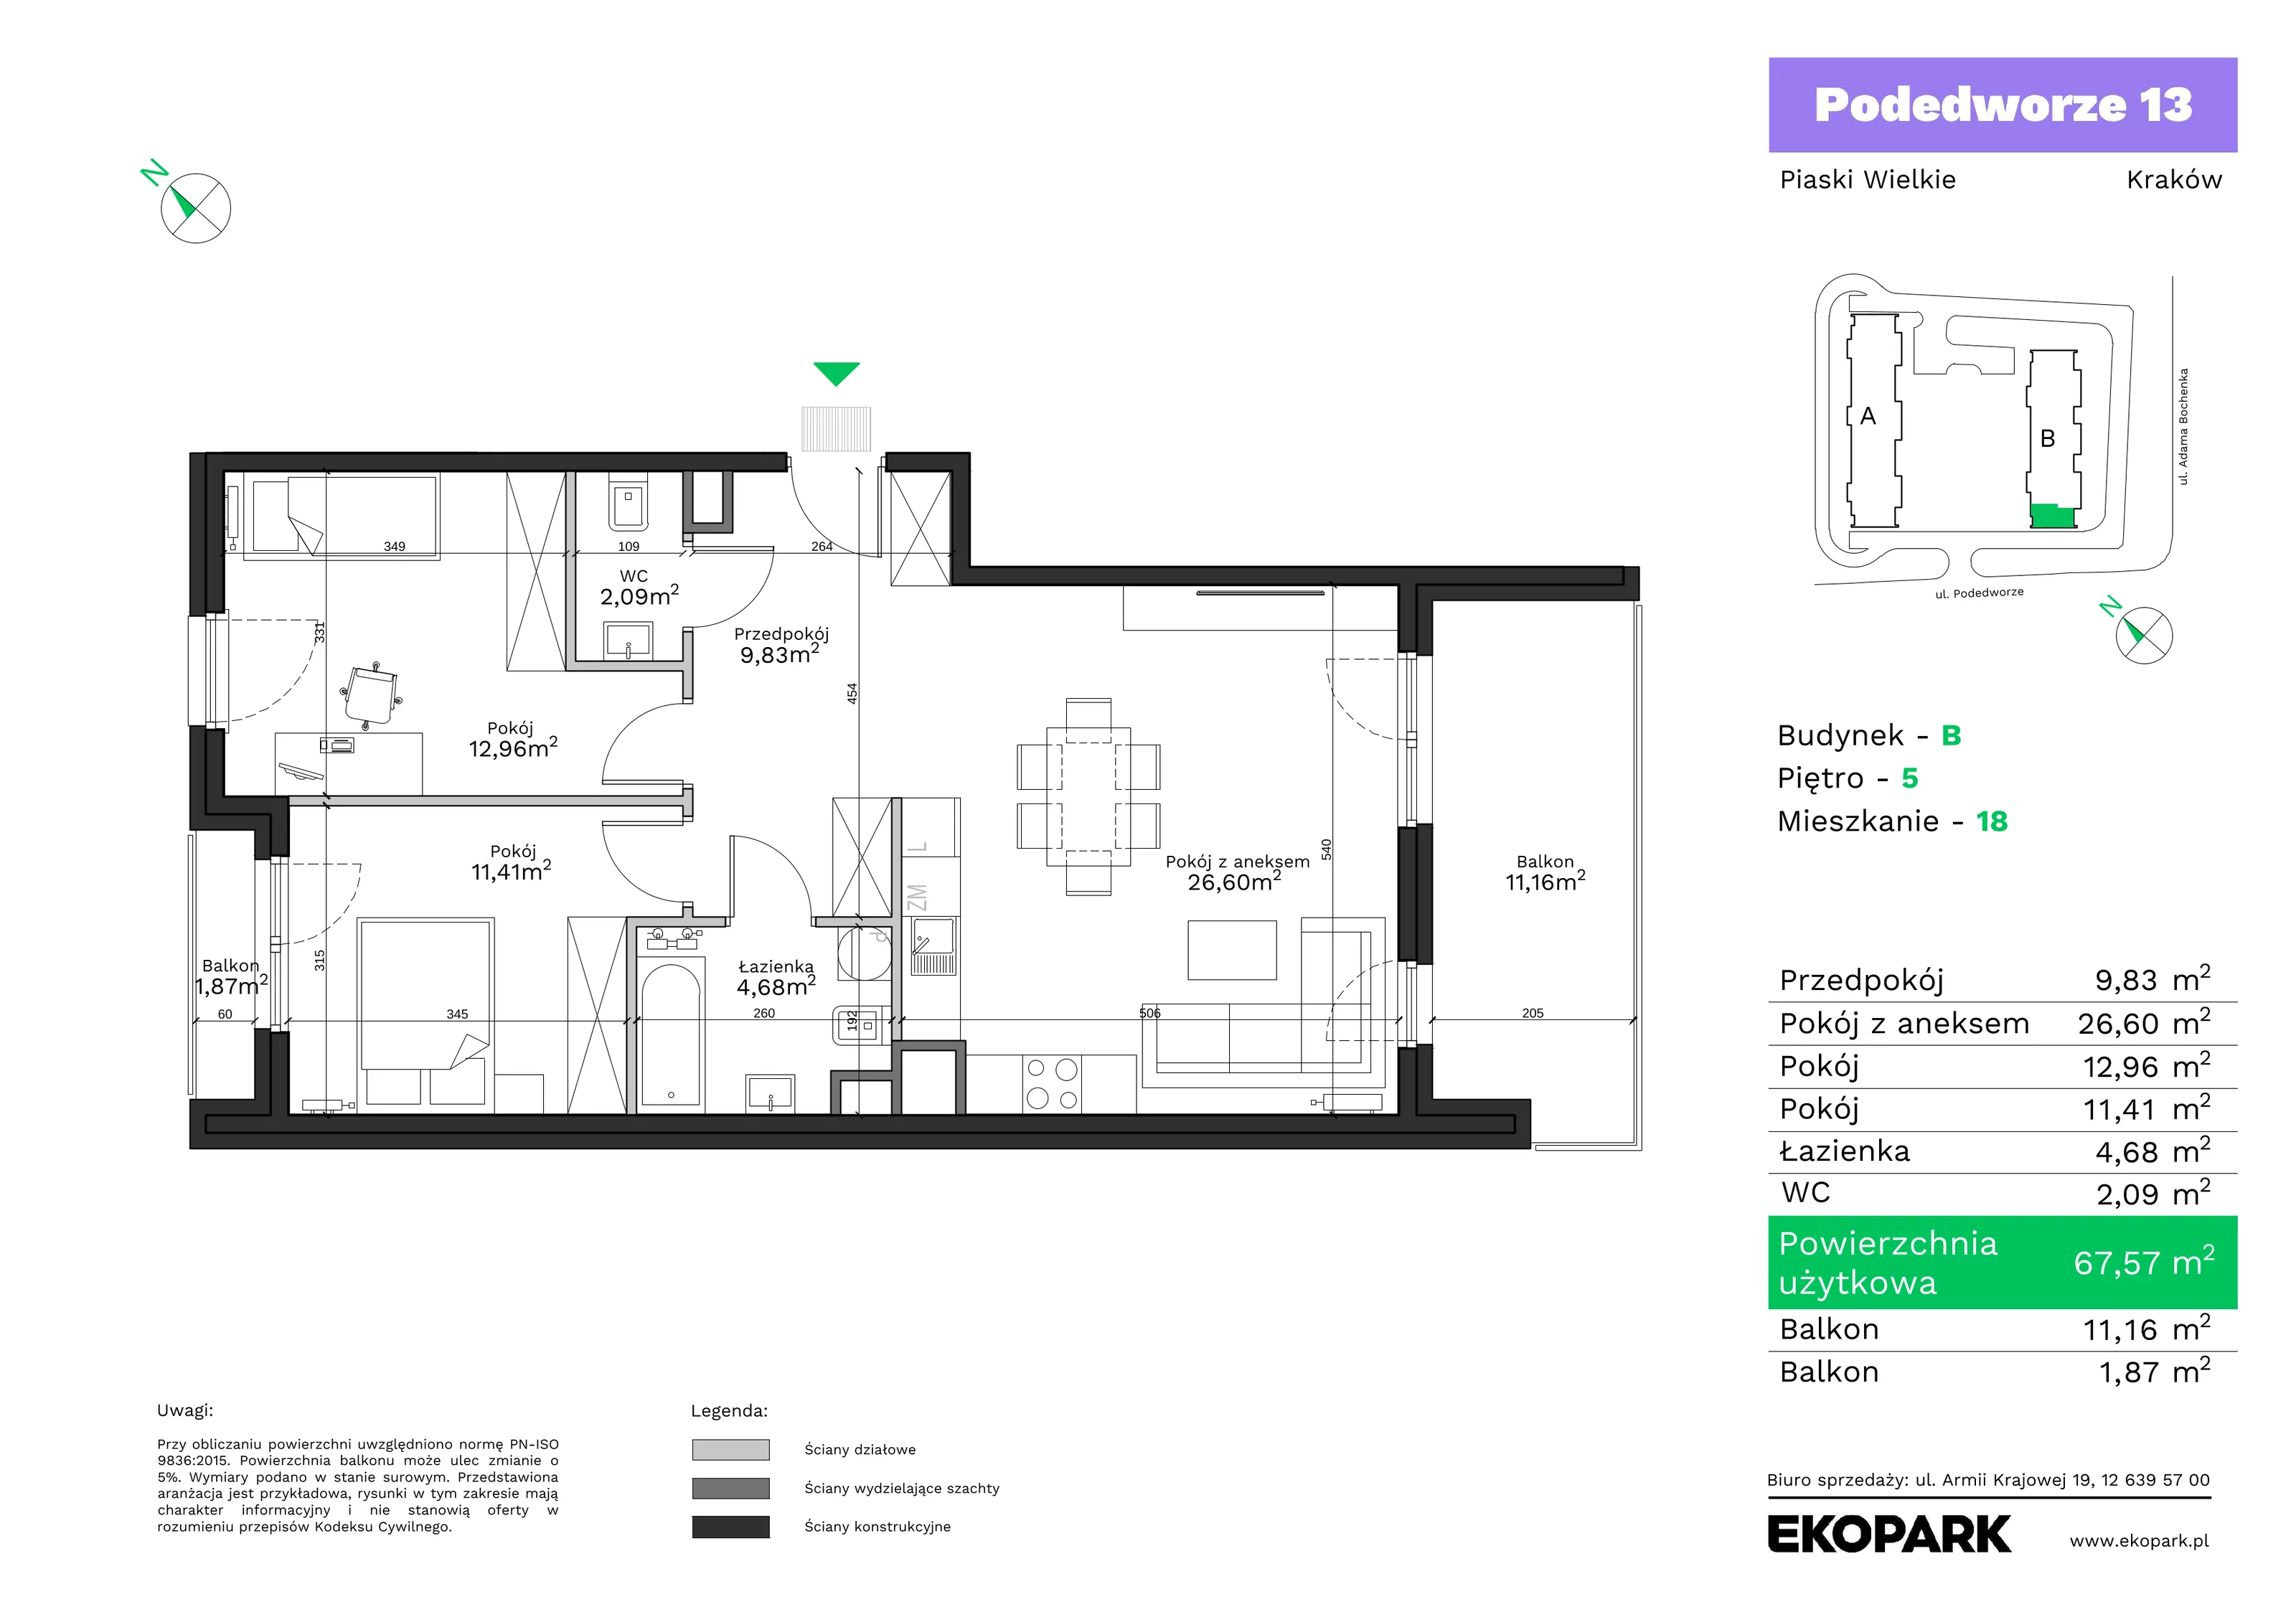 Mieszkanie 67,57 m², piętro 5, oferta nr B18, Podedworze 13, Kraków, Podgórze Duchackie, Piaski Wielkie, ul. Podedworze 13